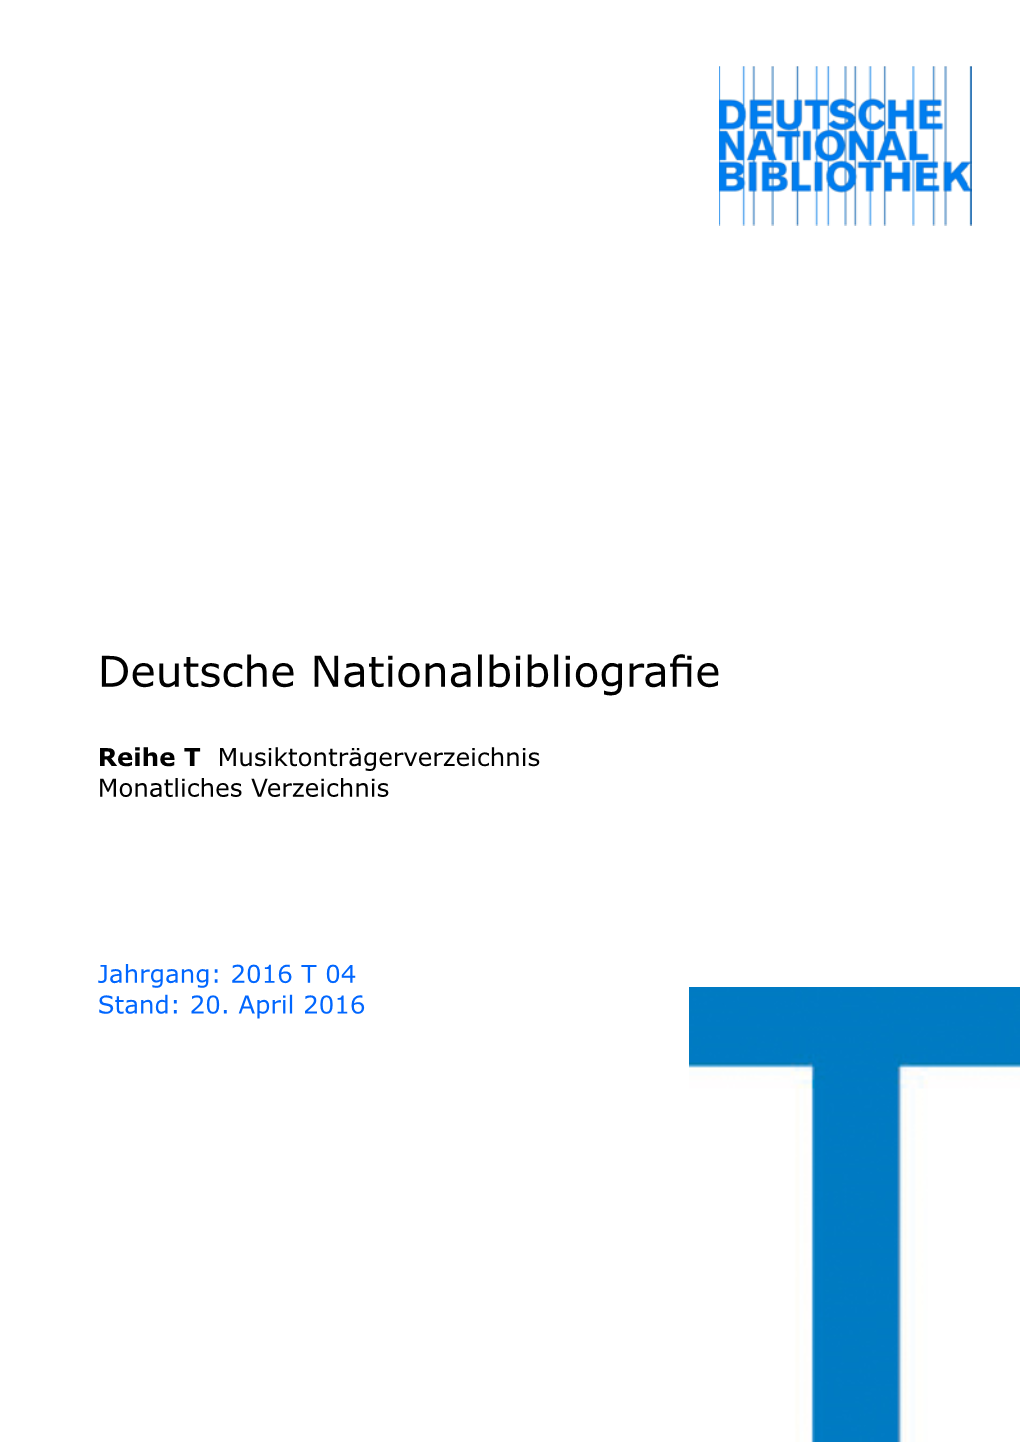 Deutsche Nationalbibliografie 2016 T 04